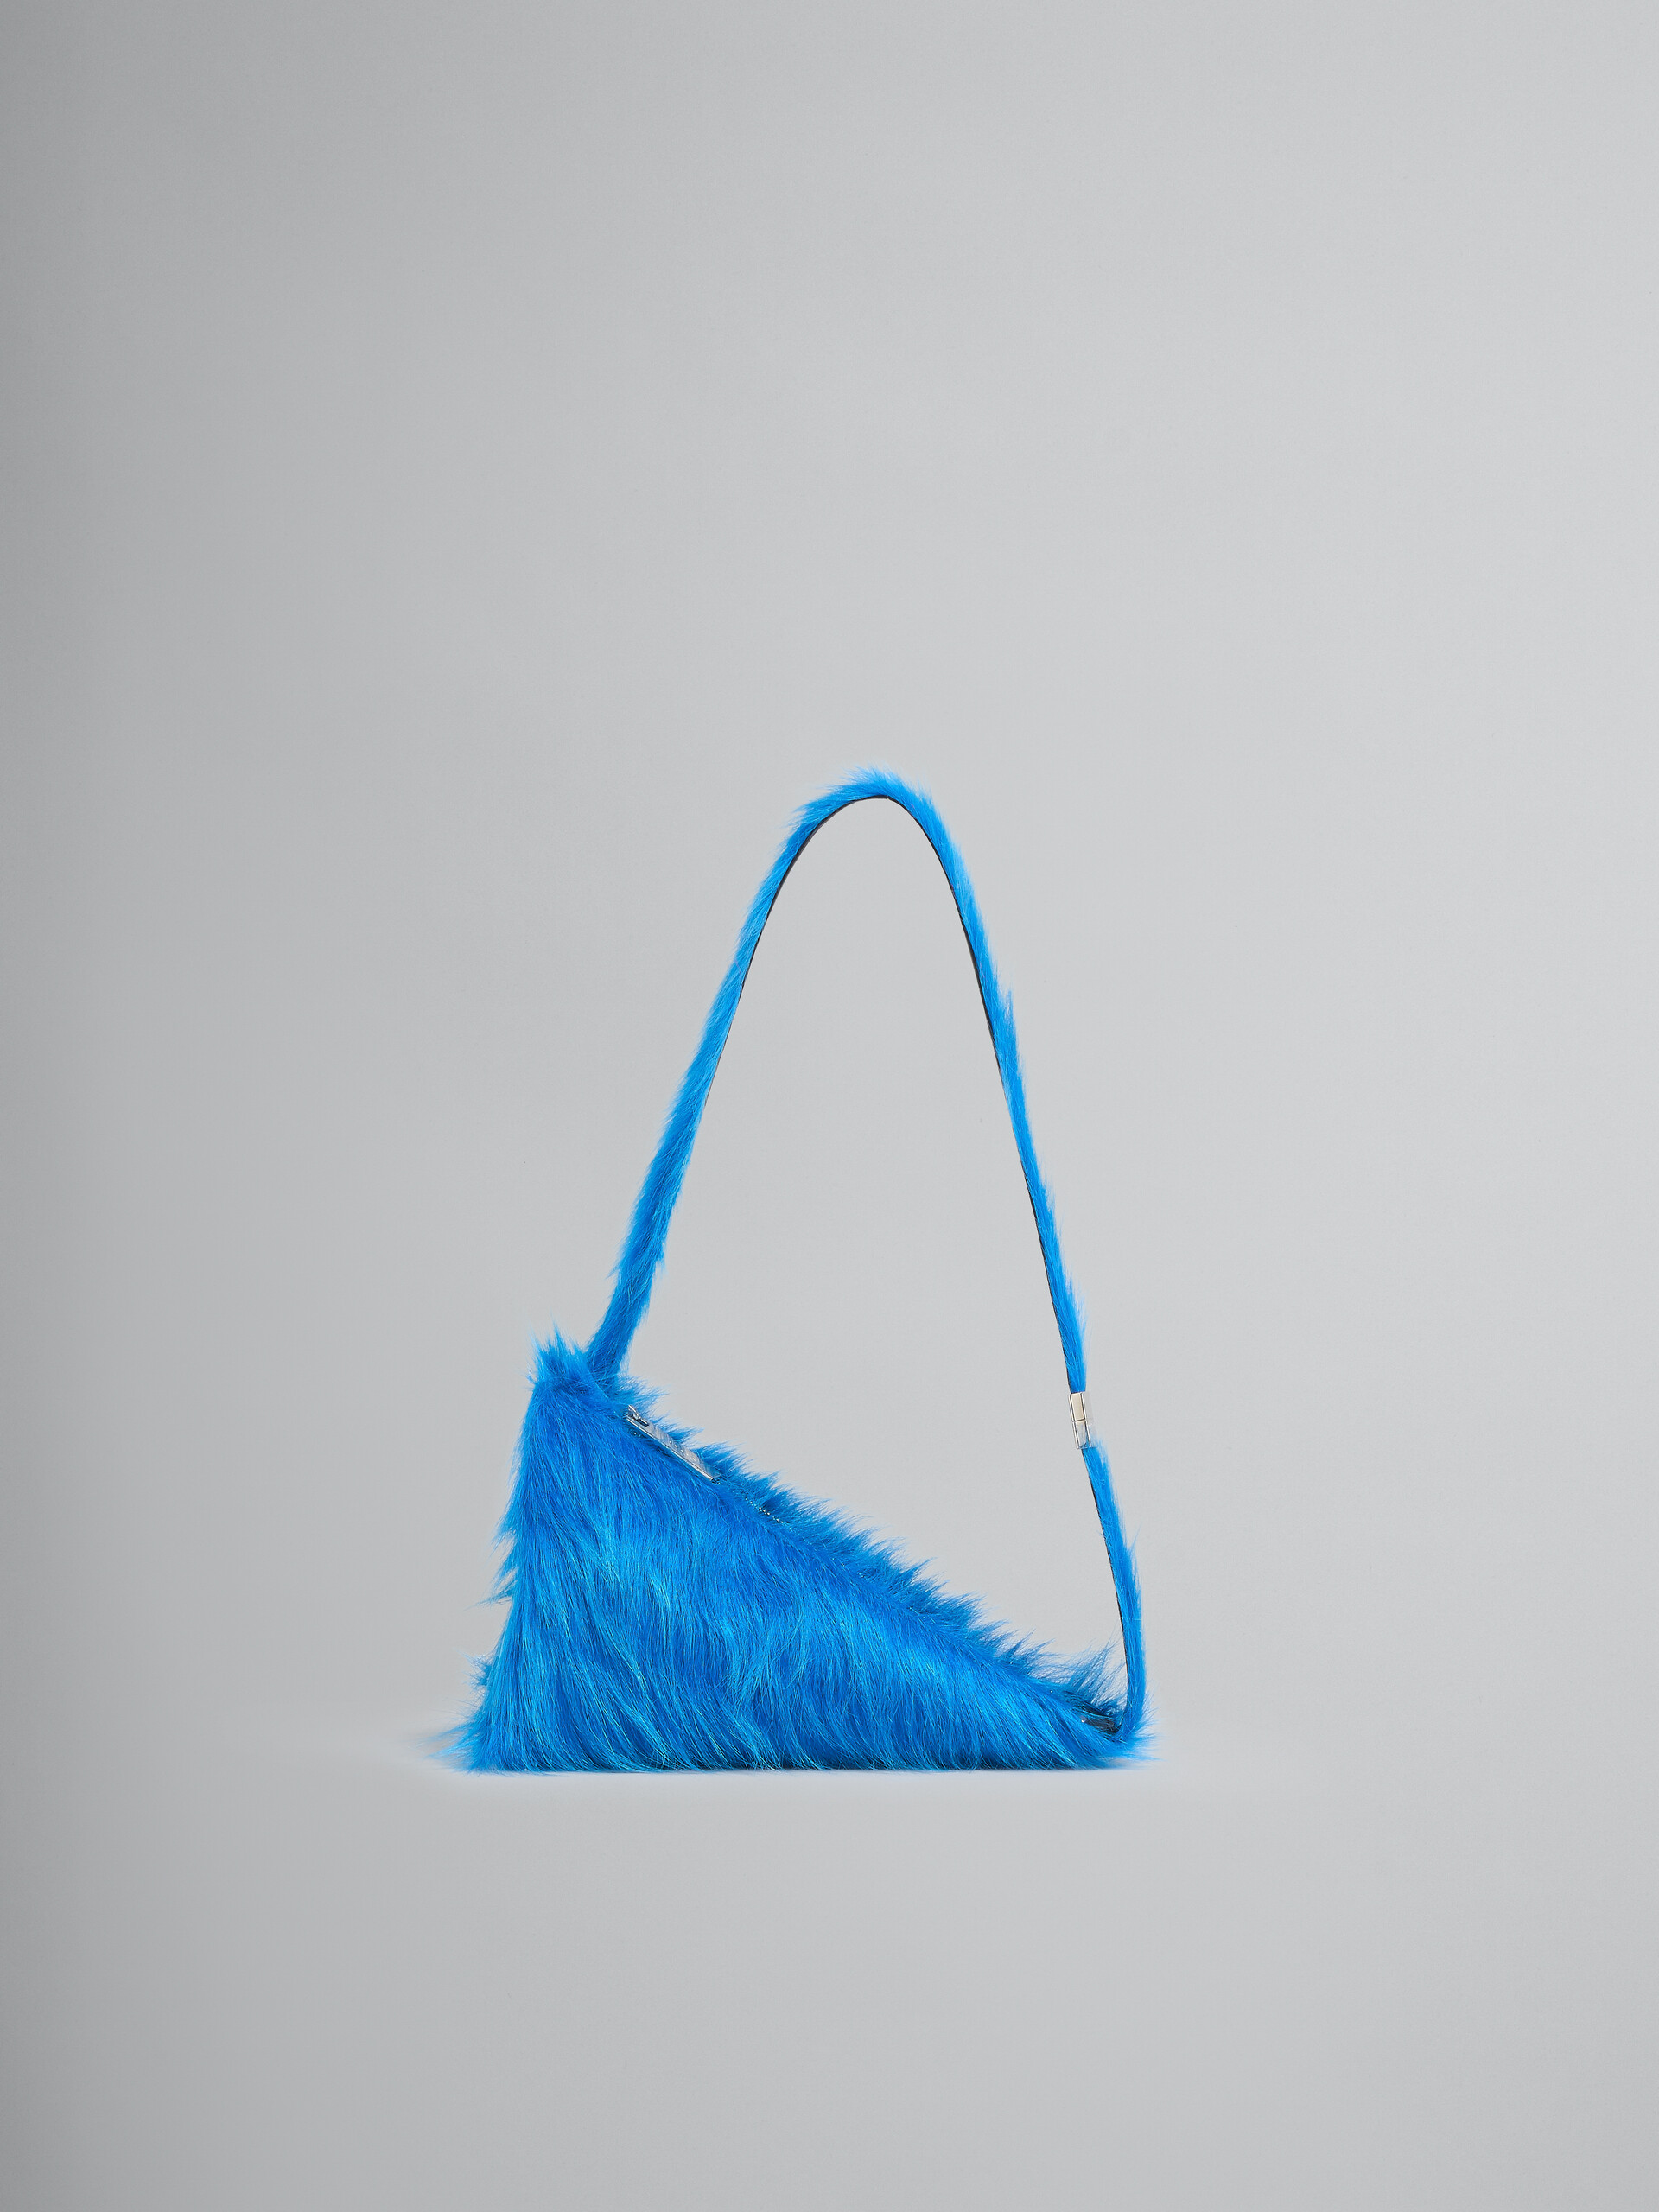 Dreieckige Umhängetasche Prisma aus Kalbsfell in Blau - Schultertaschen - Image 1